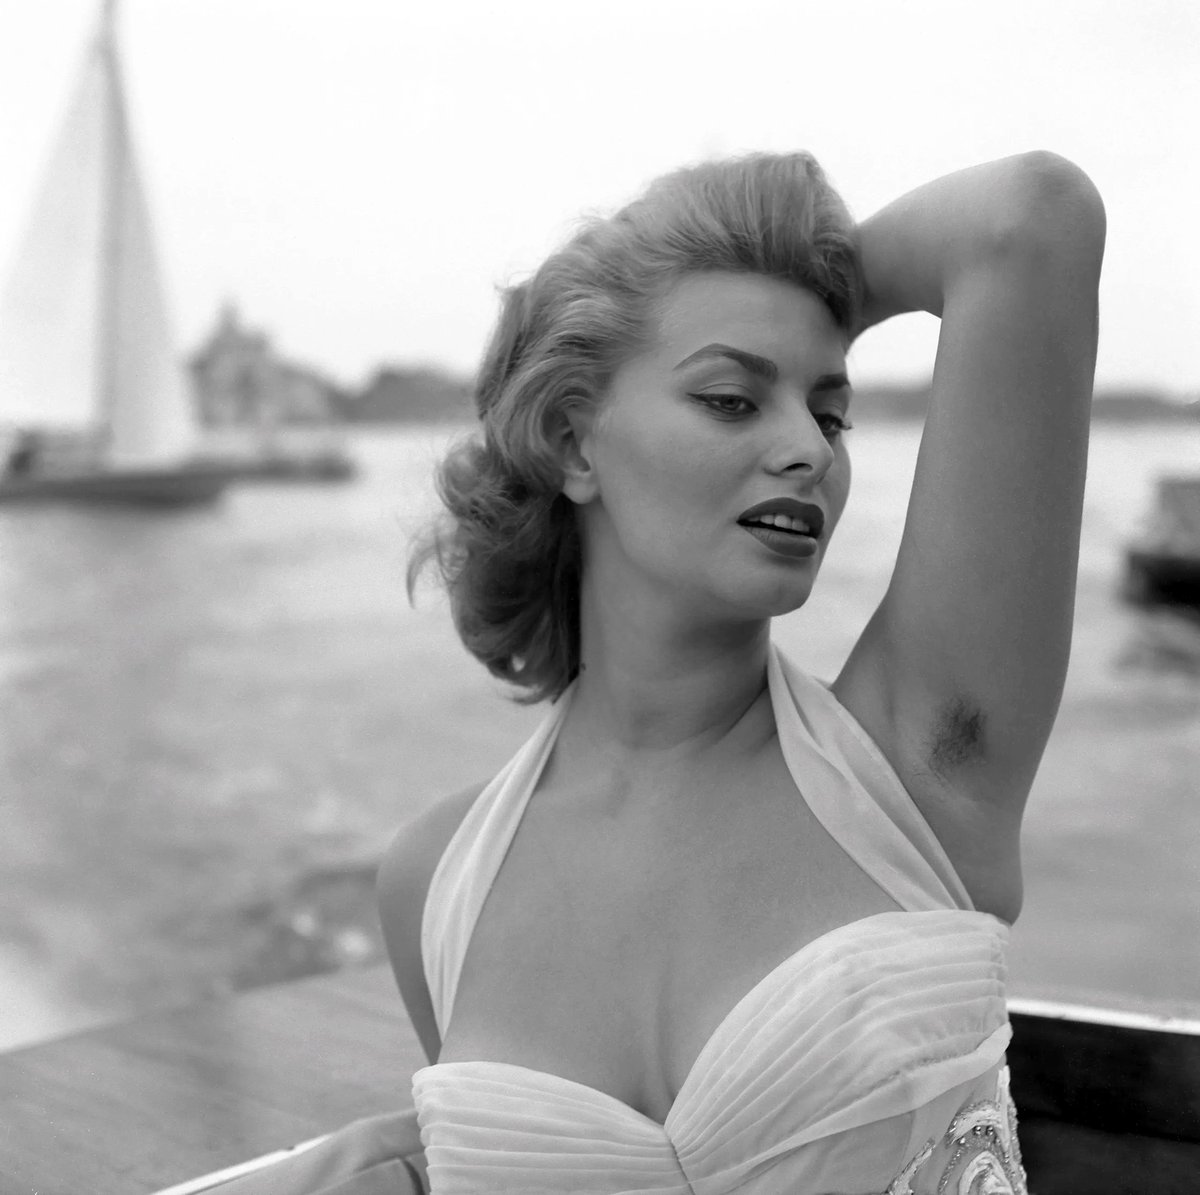 Sophia Loren in Venice, Italy, 1955. Photo © Archivio Cameraphoto Epoche.